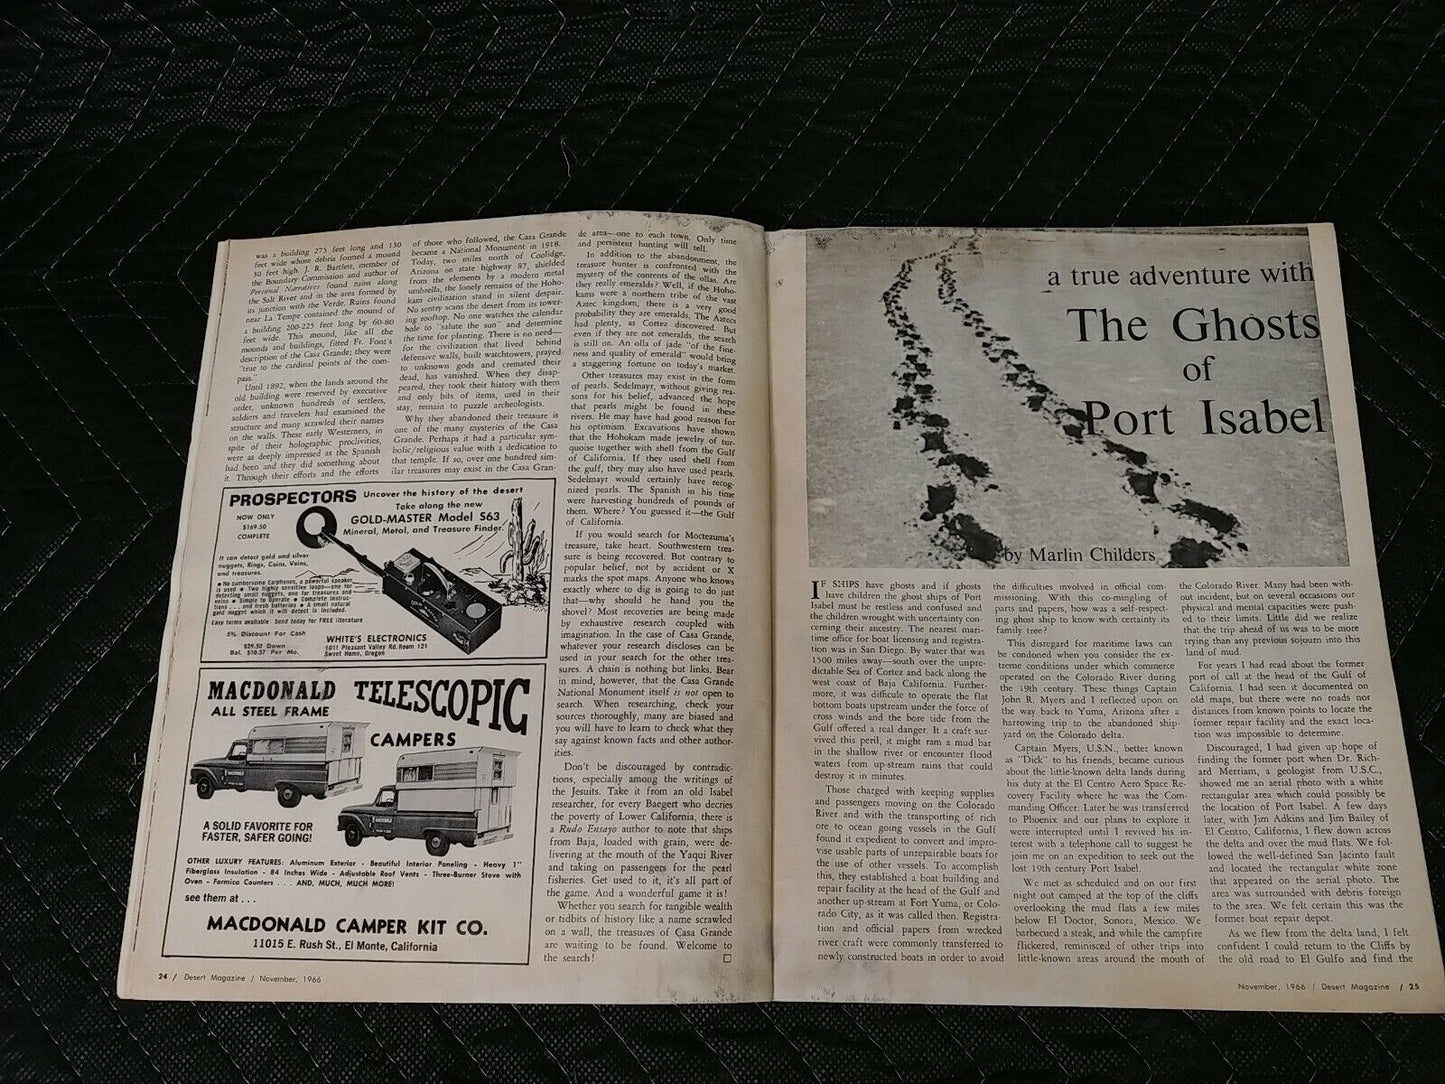 Vintage Desert Magazine November 1966